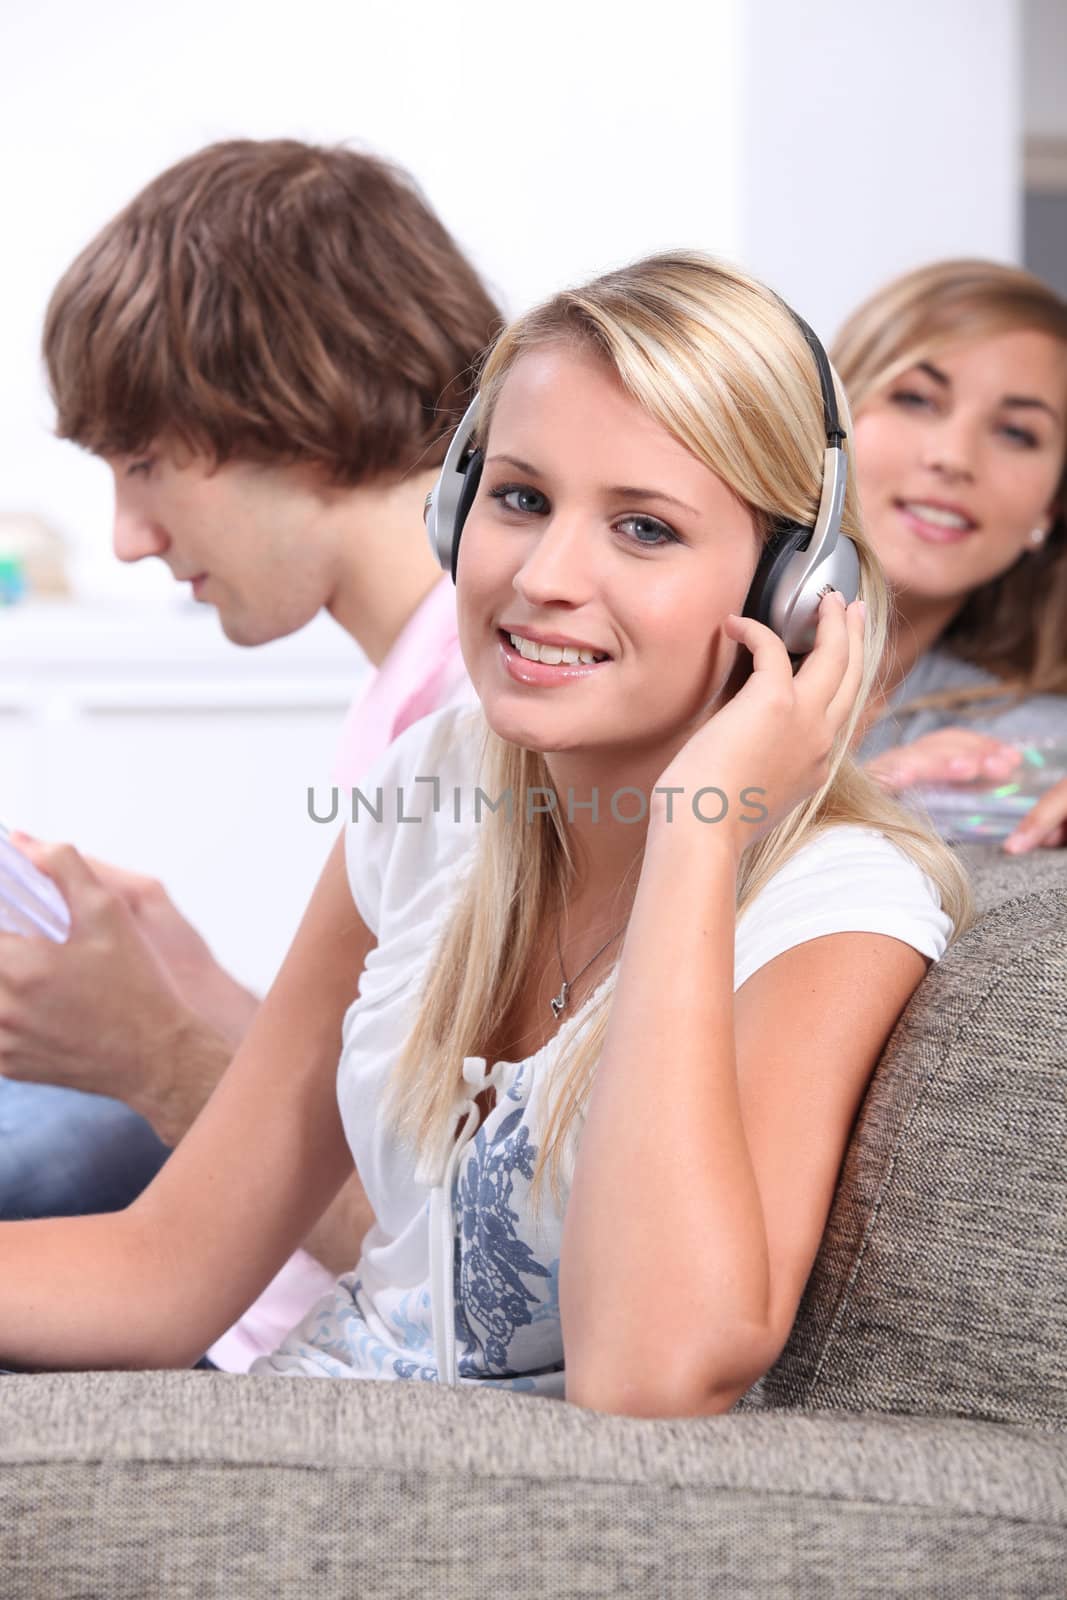 Blond teenagers wearing headphones by phovoir